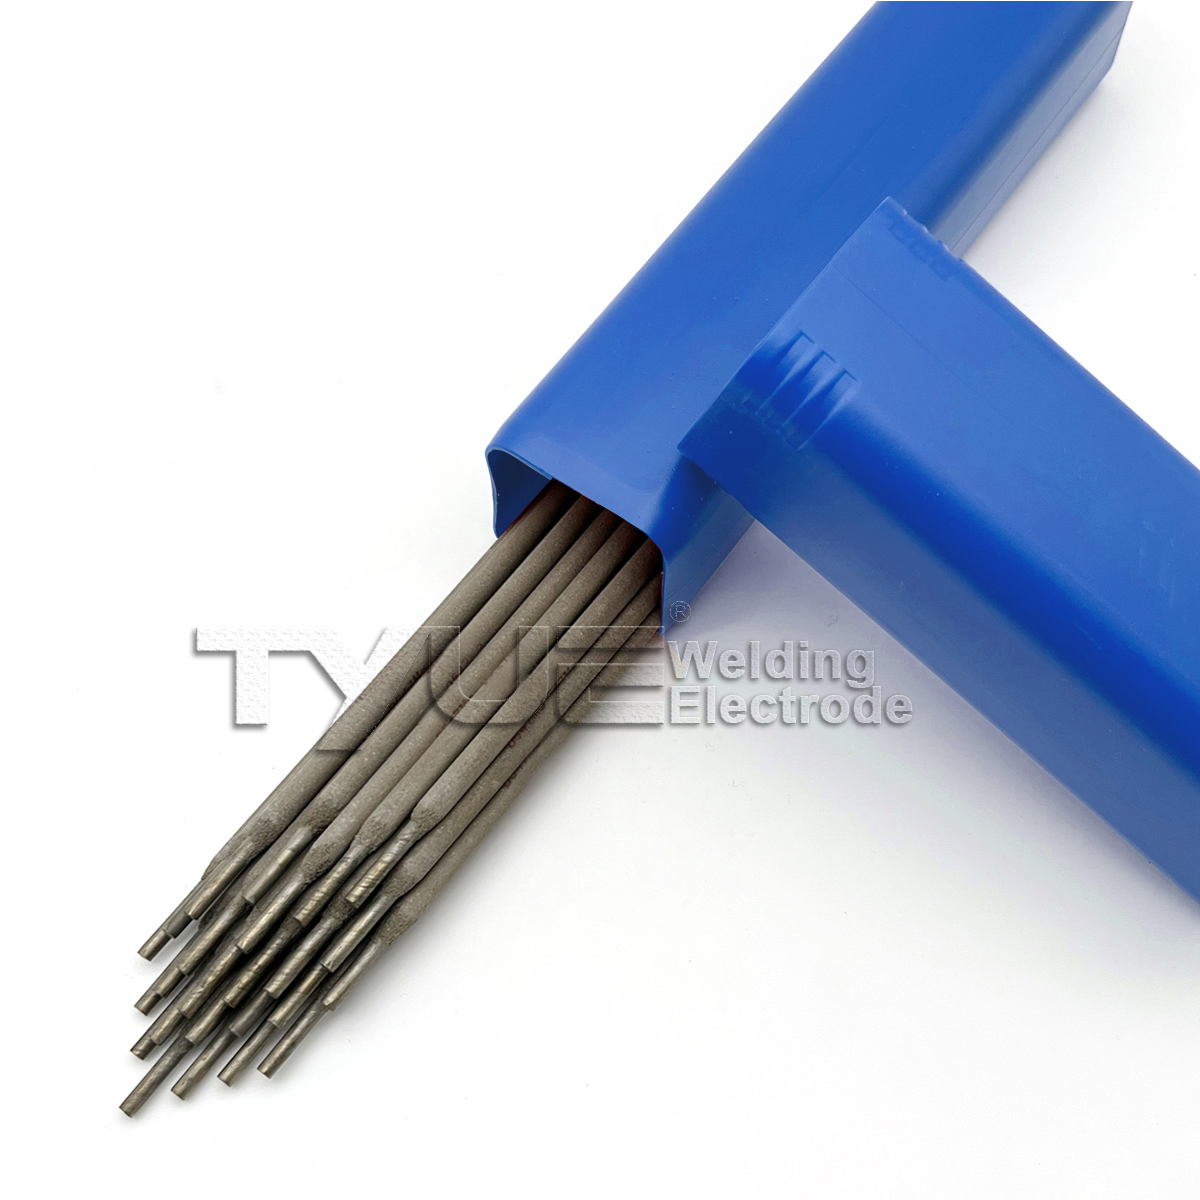 Elektrody spawalnicze do napawania DIN 8555 (E1-UM-350) Pręty spawalnicze do napawania, elektrody prętowe odporne na zużycie Obraz wyróżniony